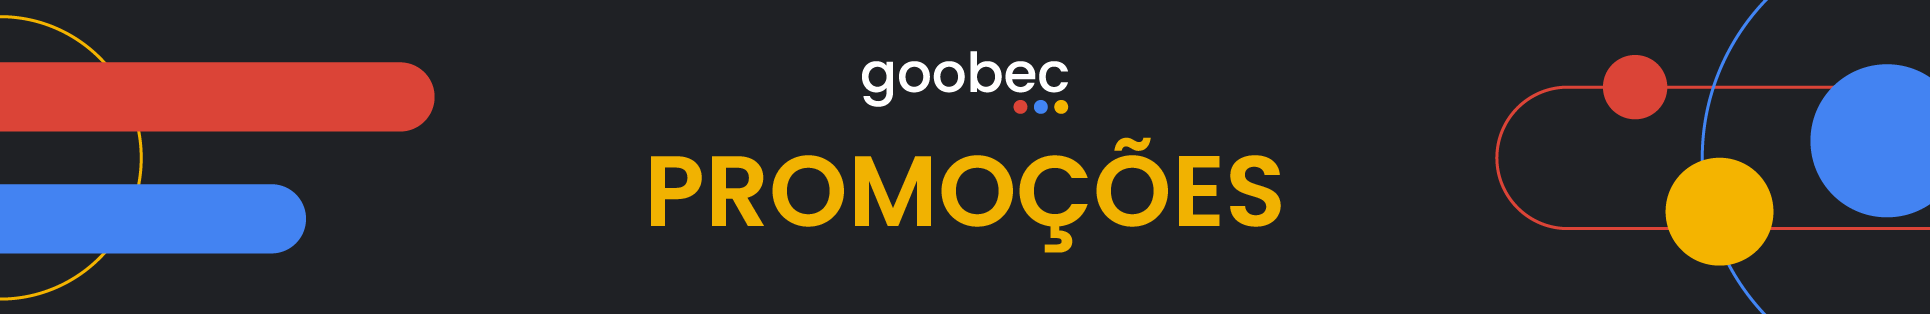 goobec_comercial_bn_promocoes